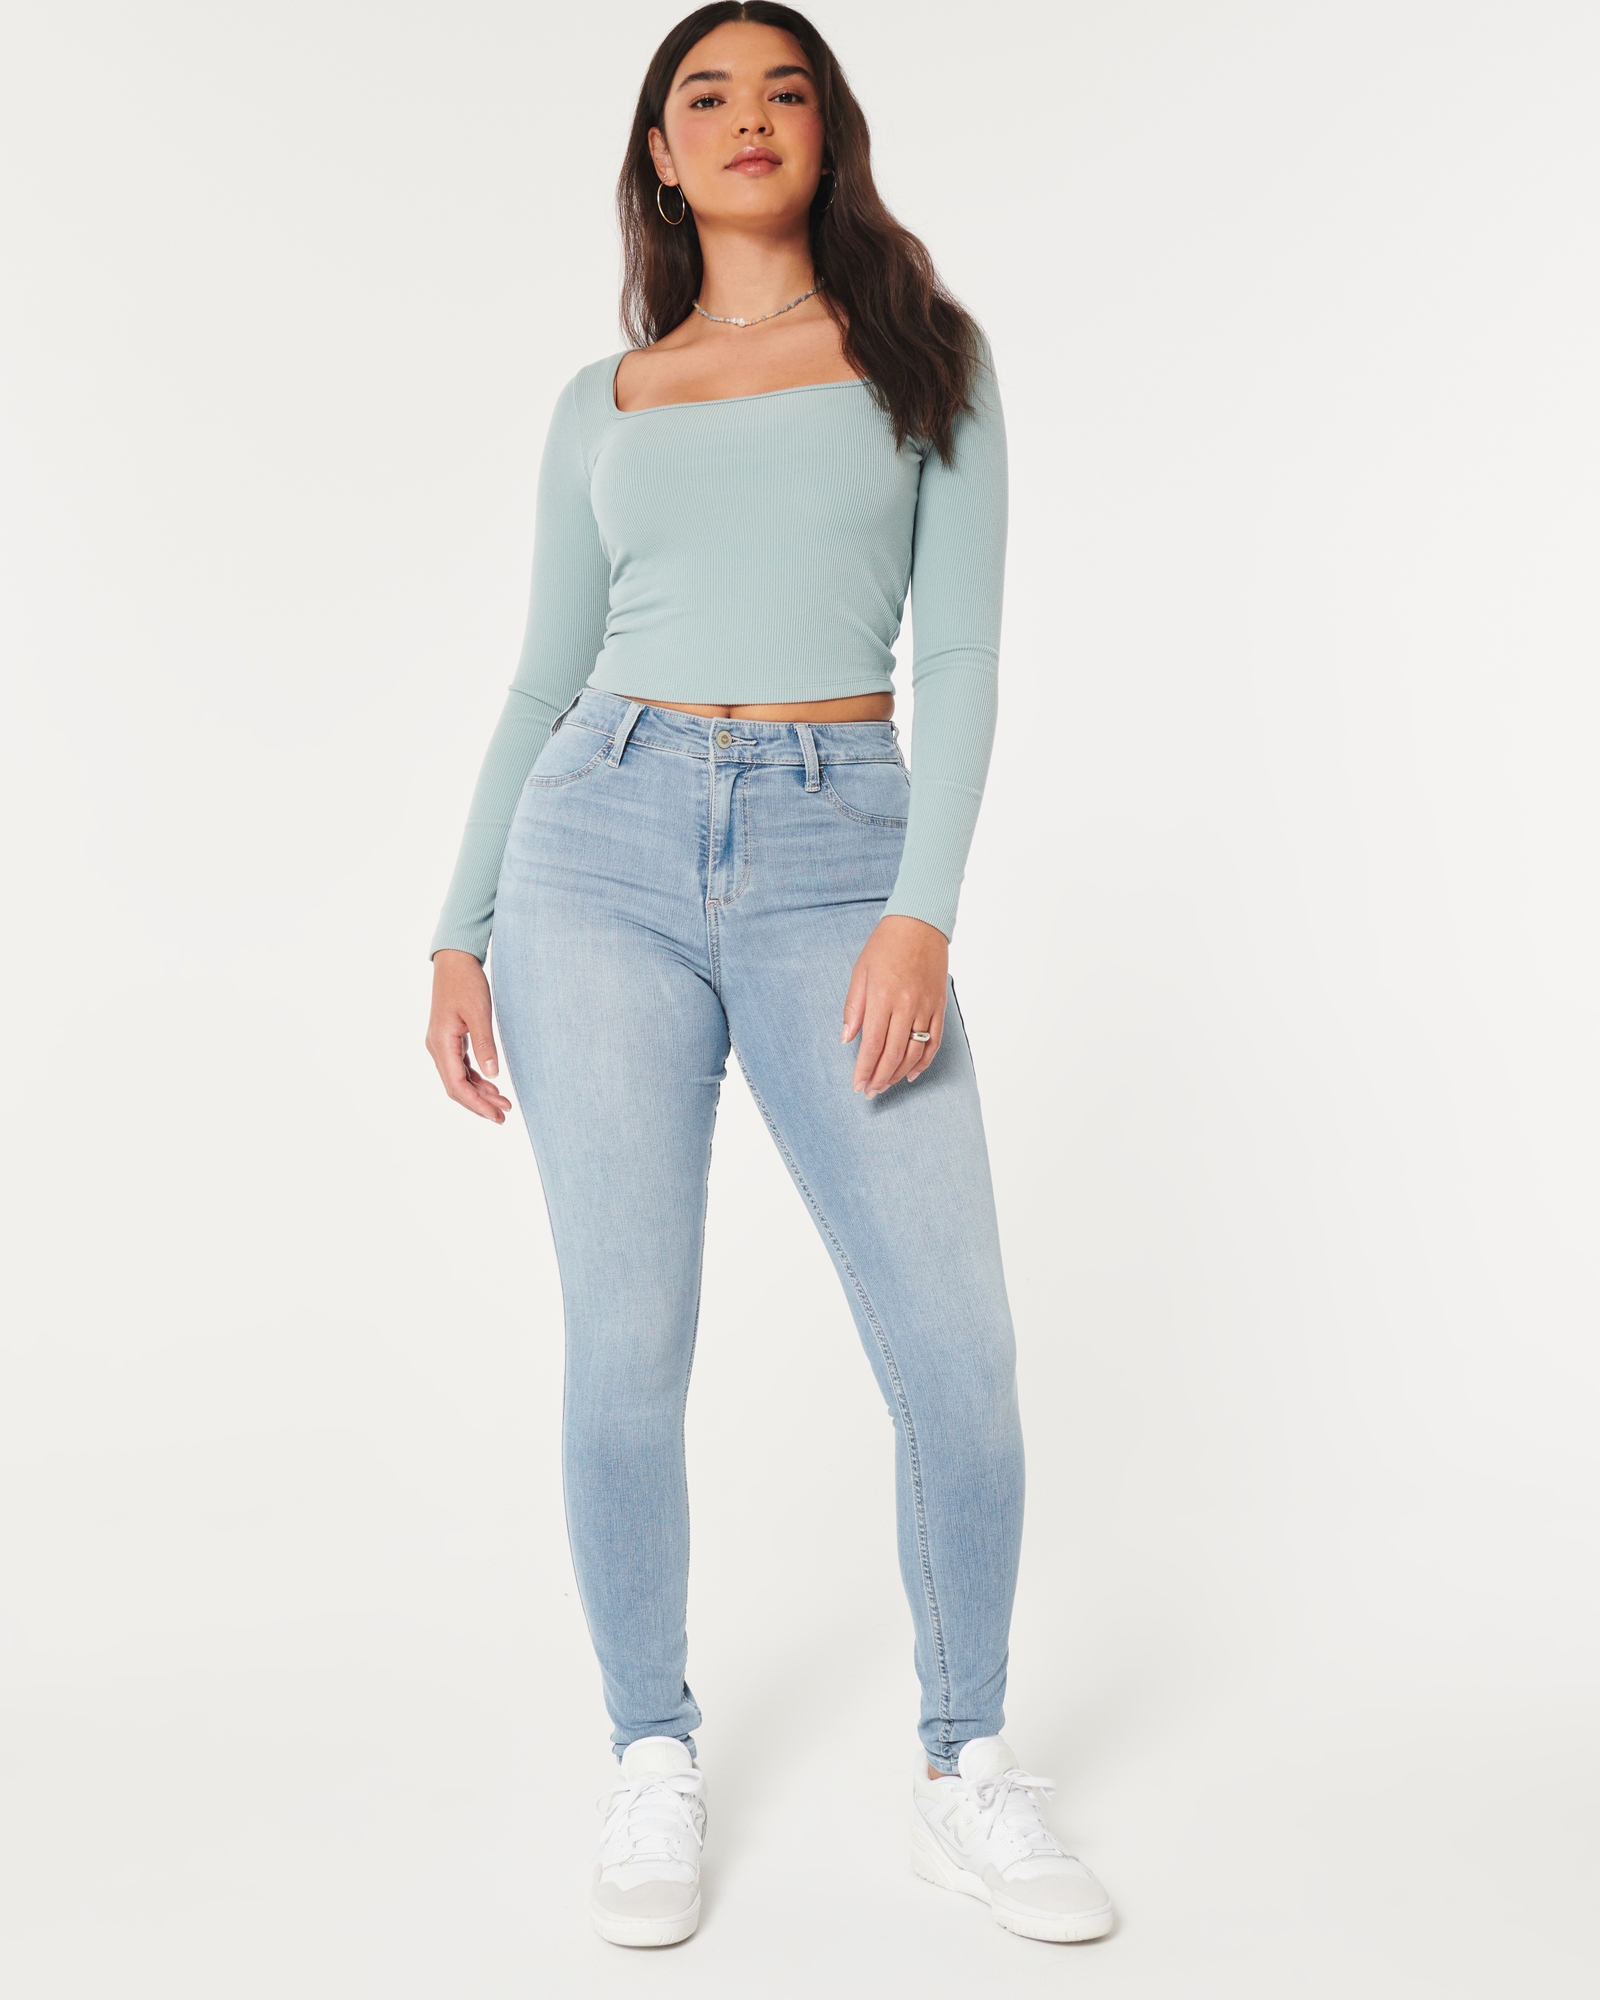 JEANS women Hollister low rise jean leggings size 30